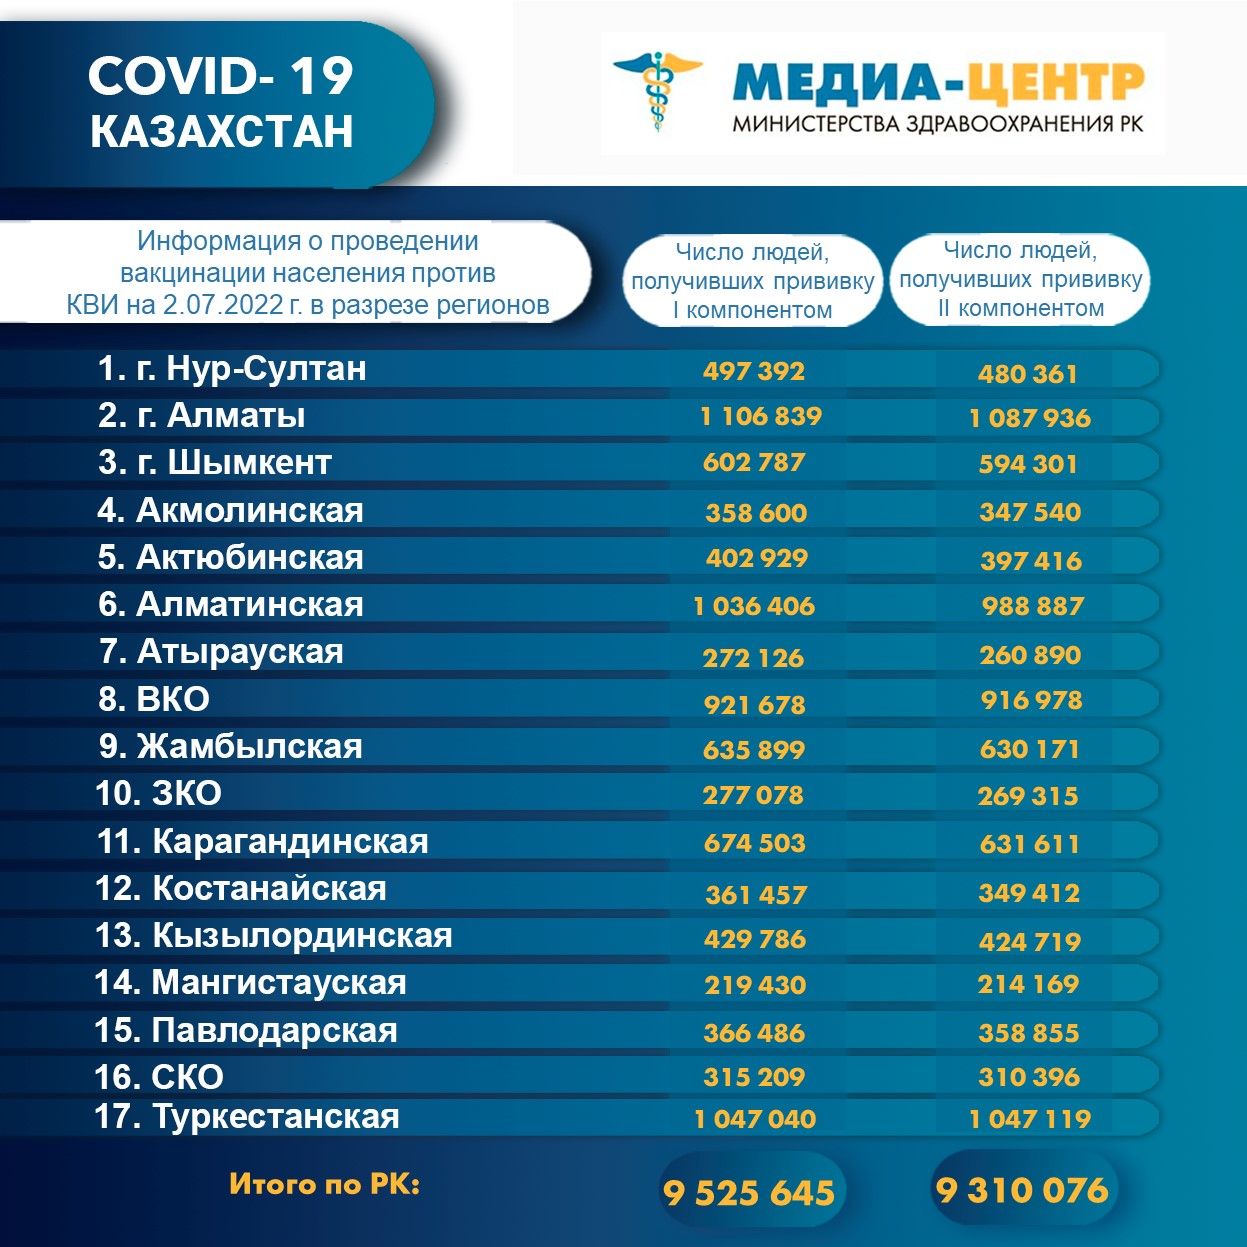 I компонентом 9 525 645 человек провакцинировано в Казахстане на 2.07.2022 г, II компонентом 9 310 076 человек. Ревакцинировано – 4 806 129